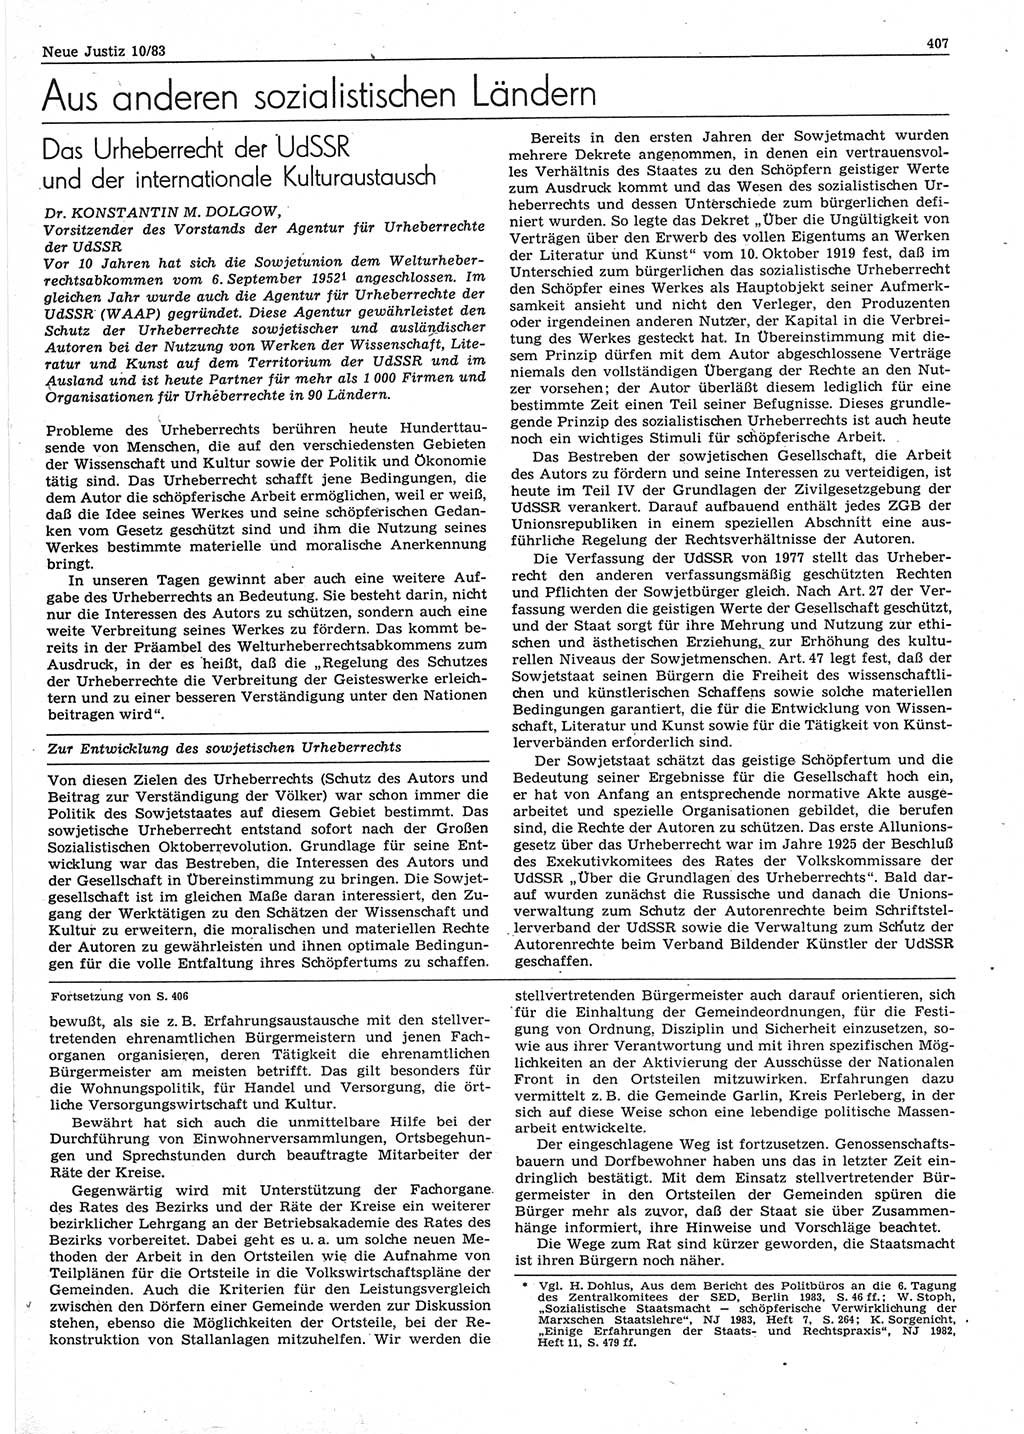 Neue Justiz (NJ), Zeitschrift für sozialistisches Recht und Gesetzlichkeit [Deutsche Demokratische Republik (DDR)], 37. Jahrgang 1983, Seite 407 (NJ DDR 1983, S. 407)